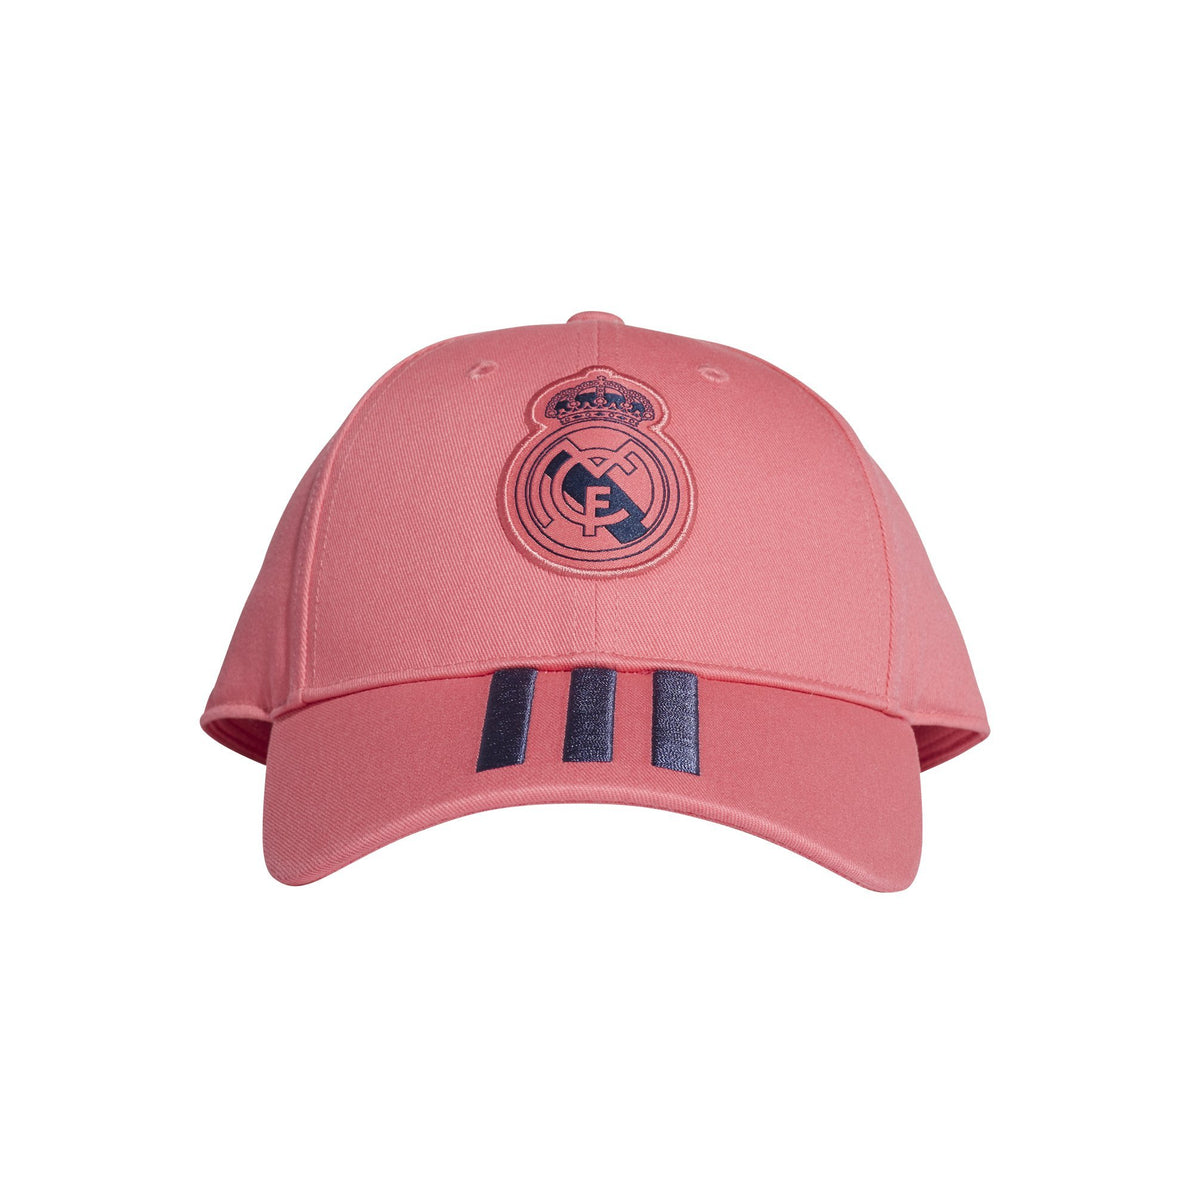 adidas pink cap